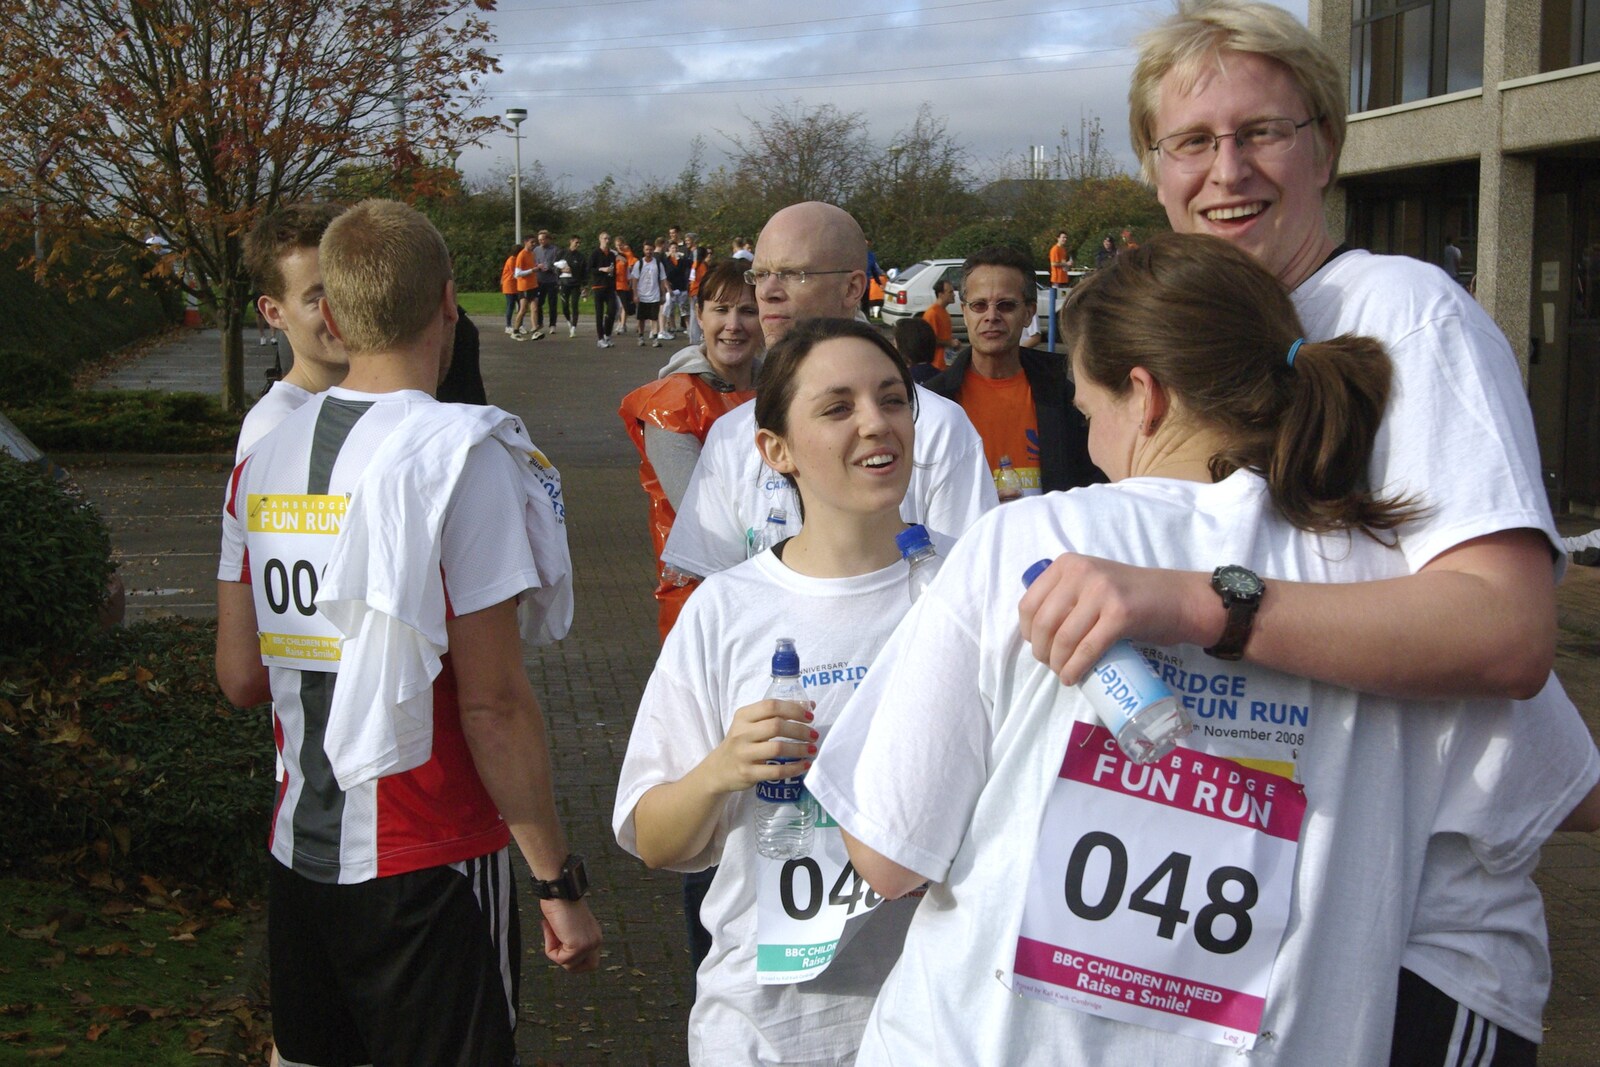 The Cambridge Fun Run, Milton Road, Cambridge - 14th November 2008: Nick 'Son of Boris' makes it back